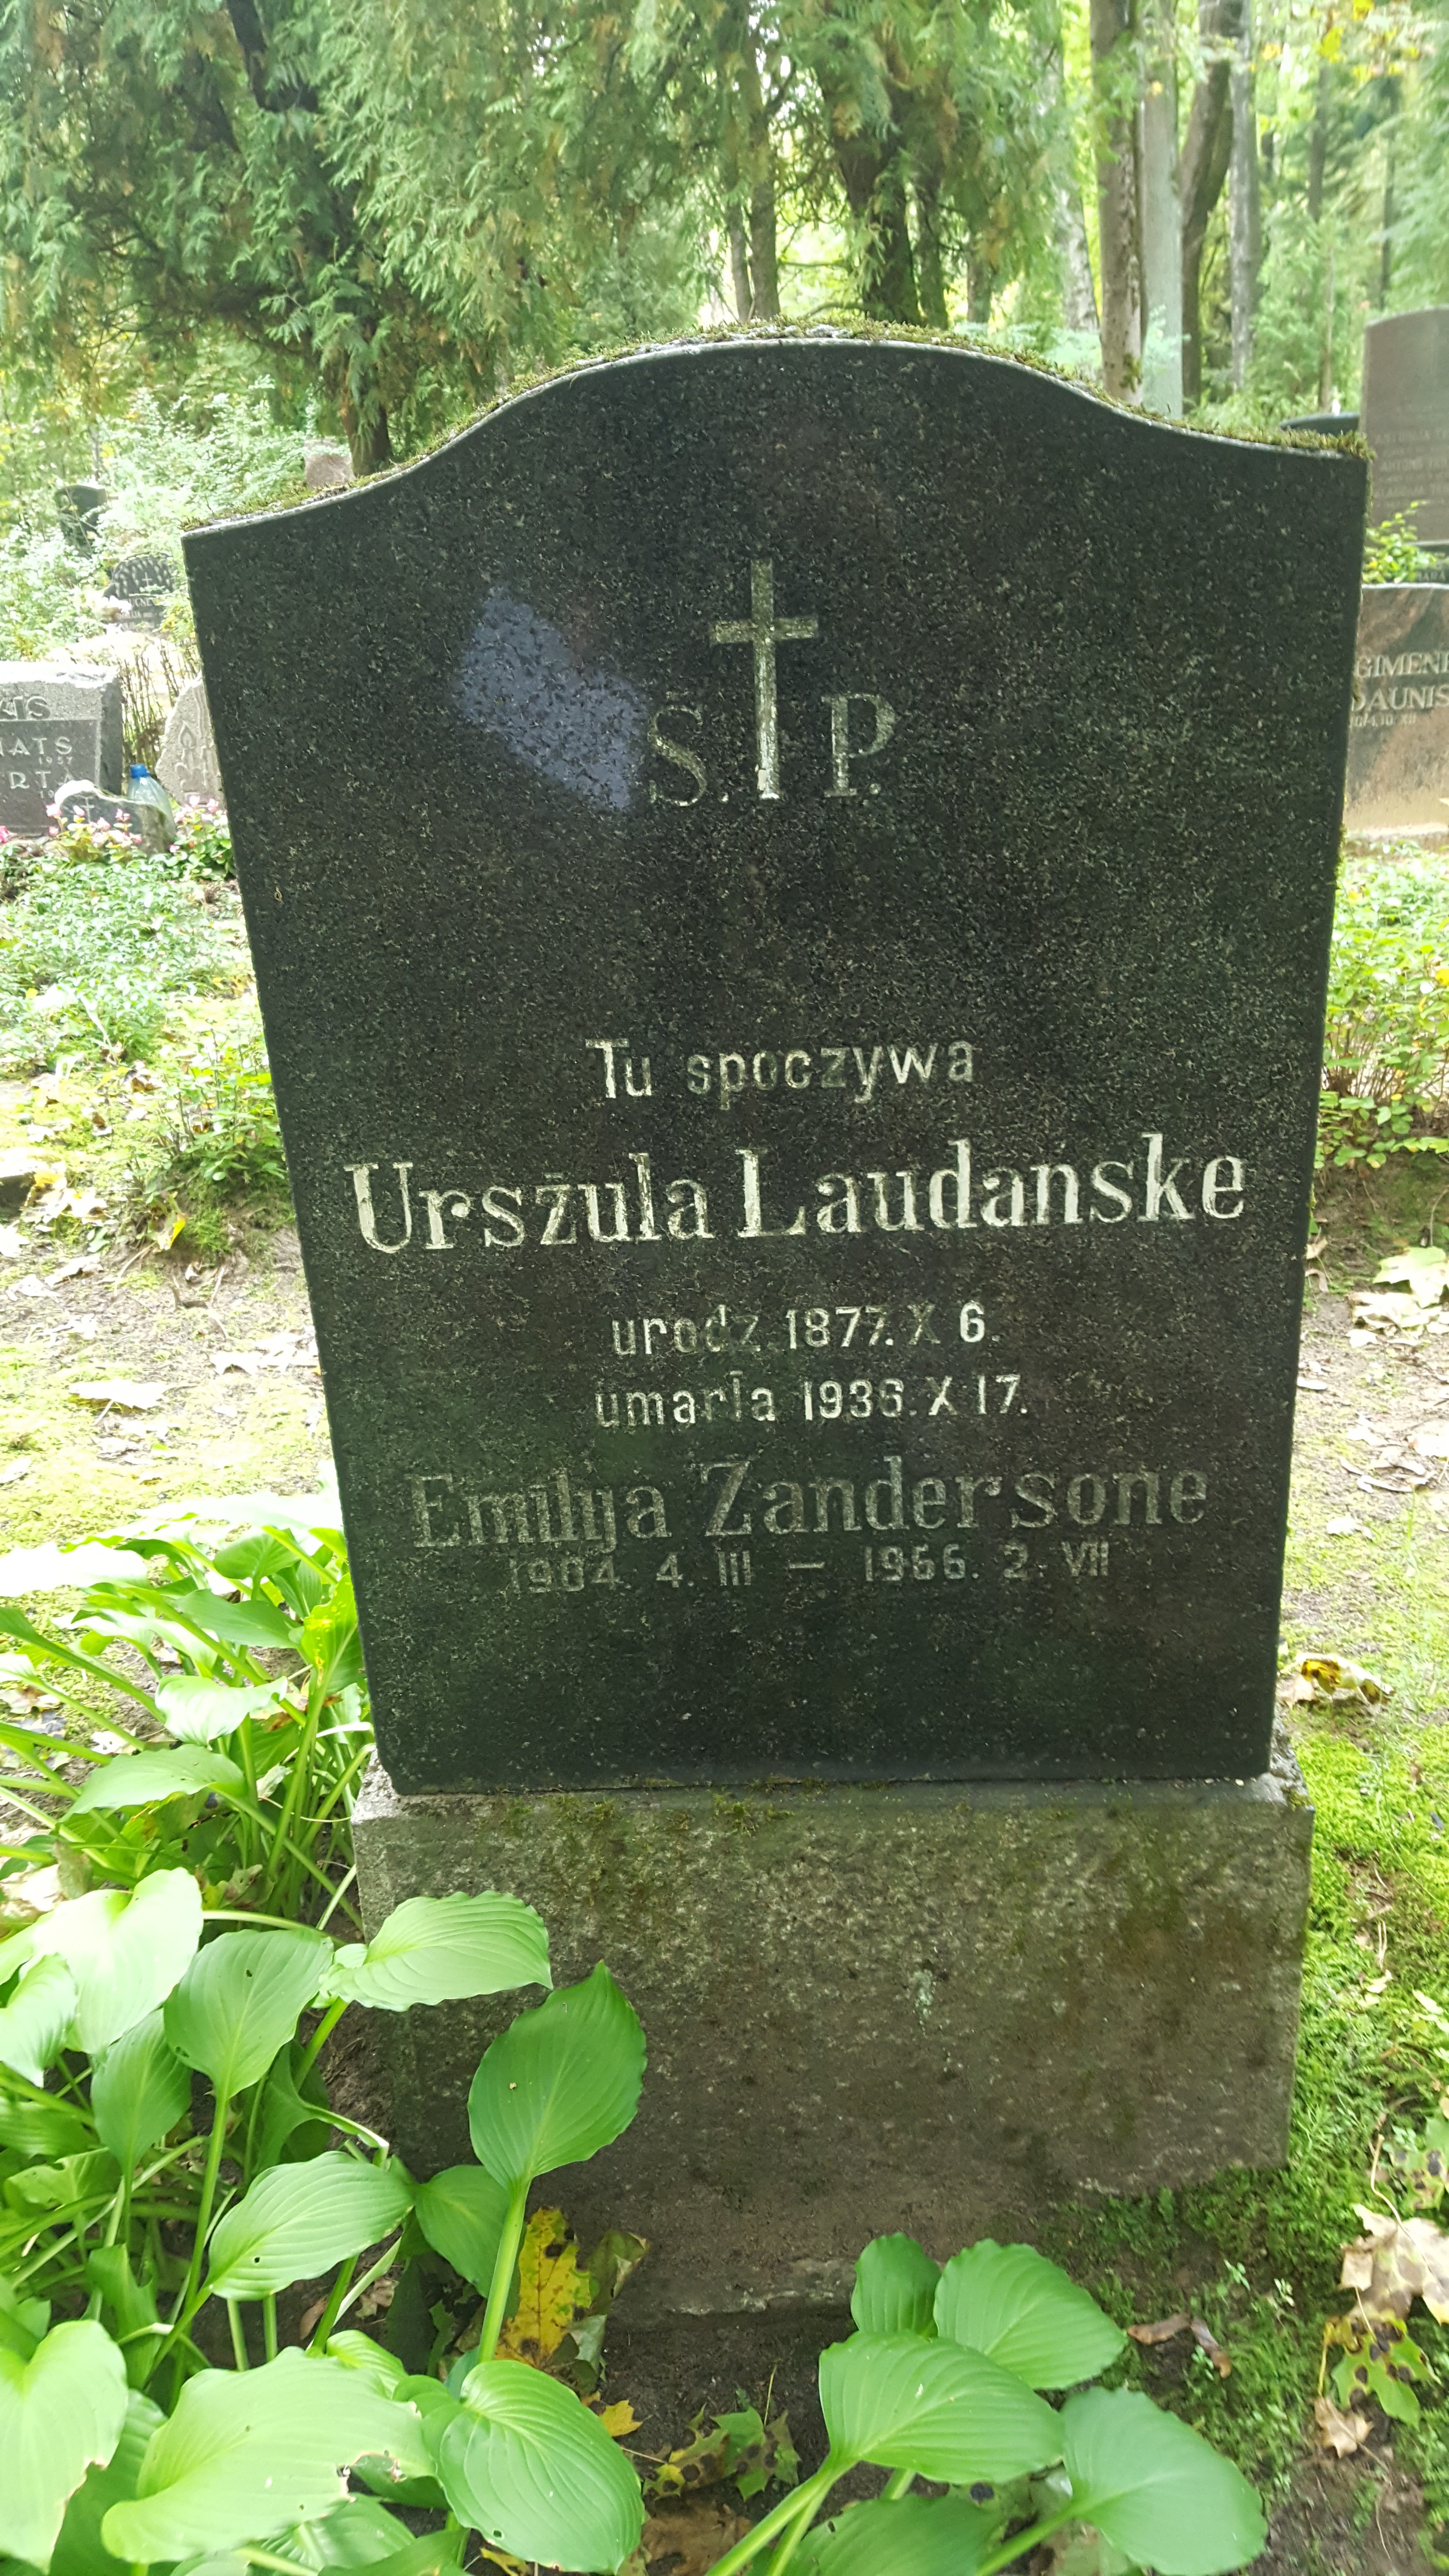 Inscription from the gravestone of Ursula Laudanske and Emilija Zandersone, St Michael's cemetery in Riga, as of 2021.